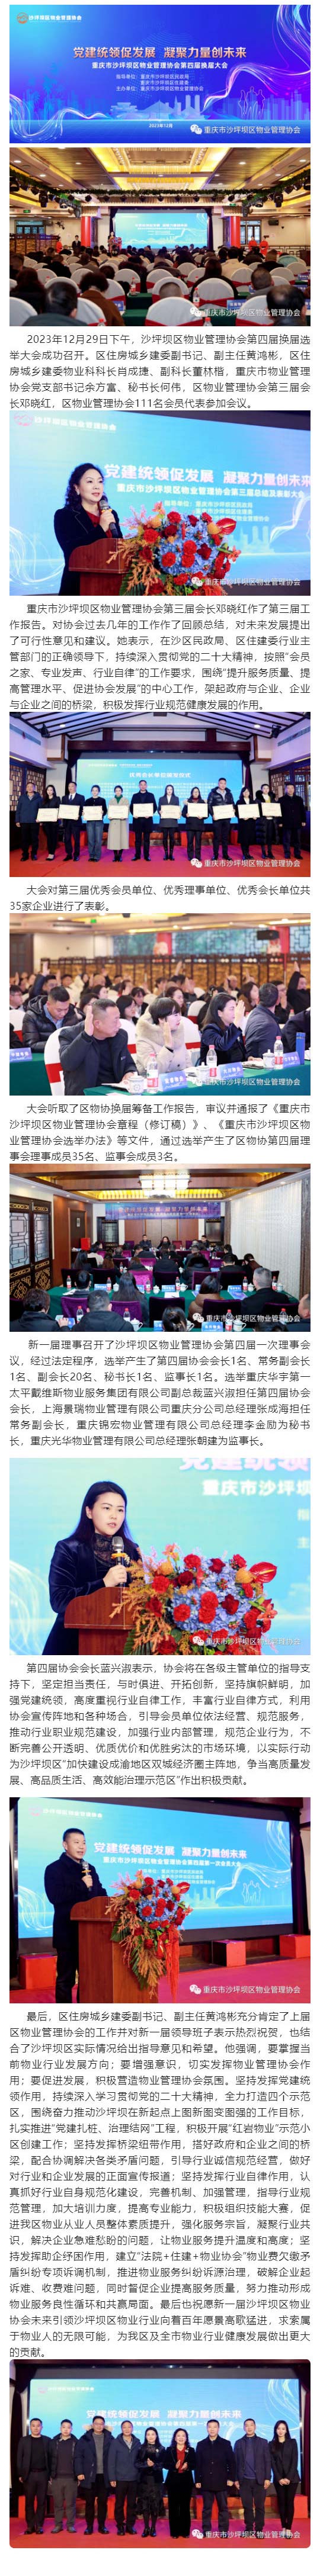 重庆市沙坪坝区物业管理协会第四届换届选举大会取得圆满成功.jpg